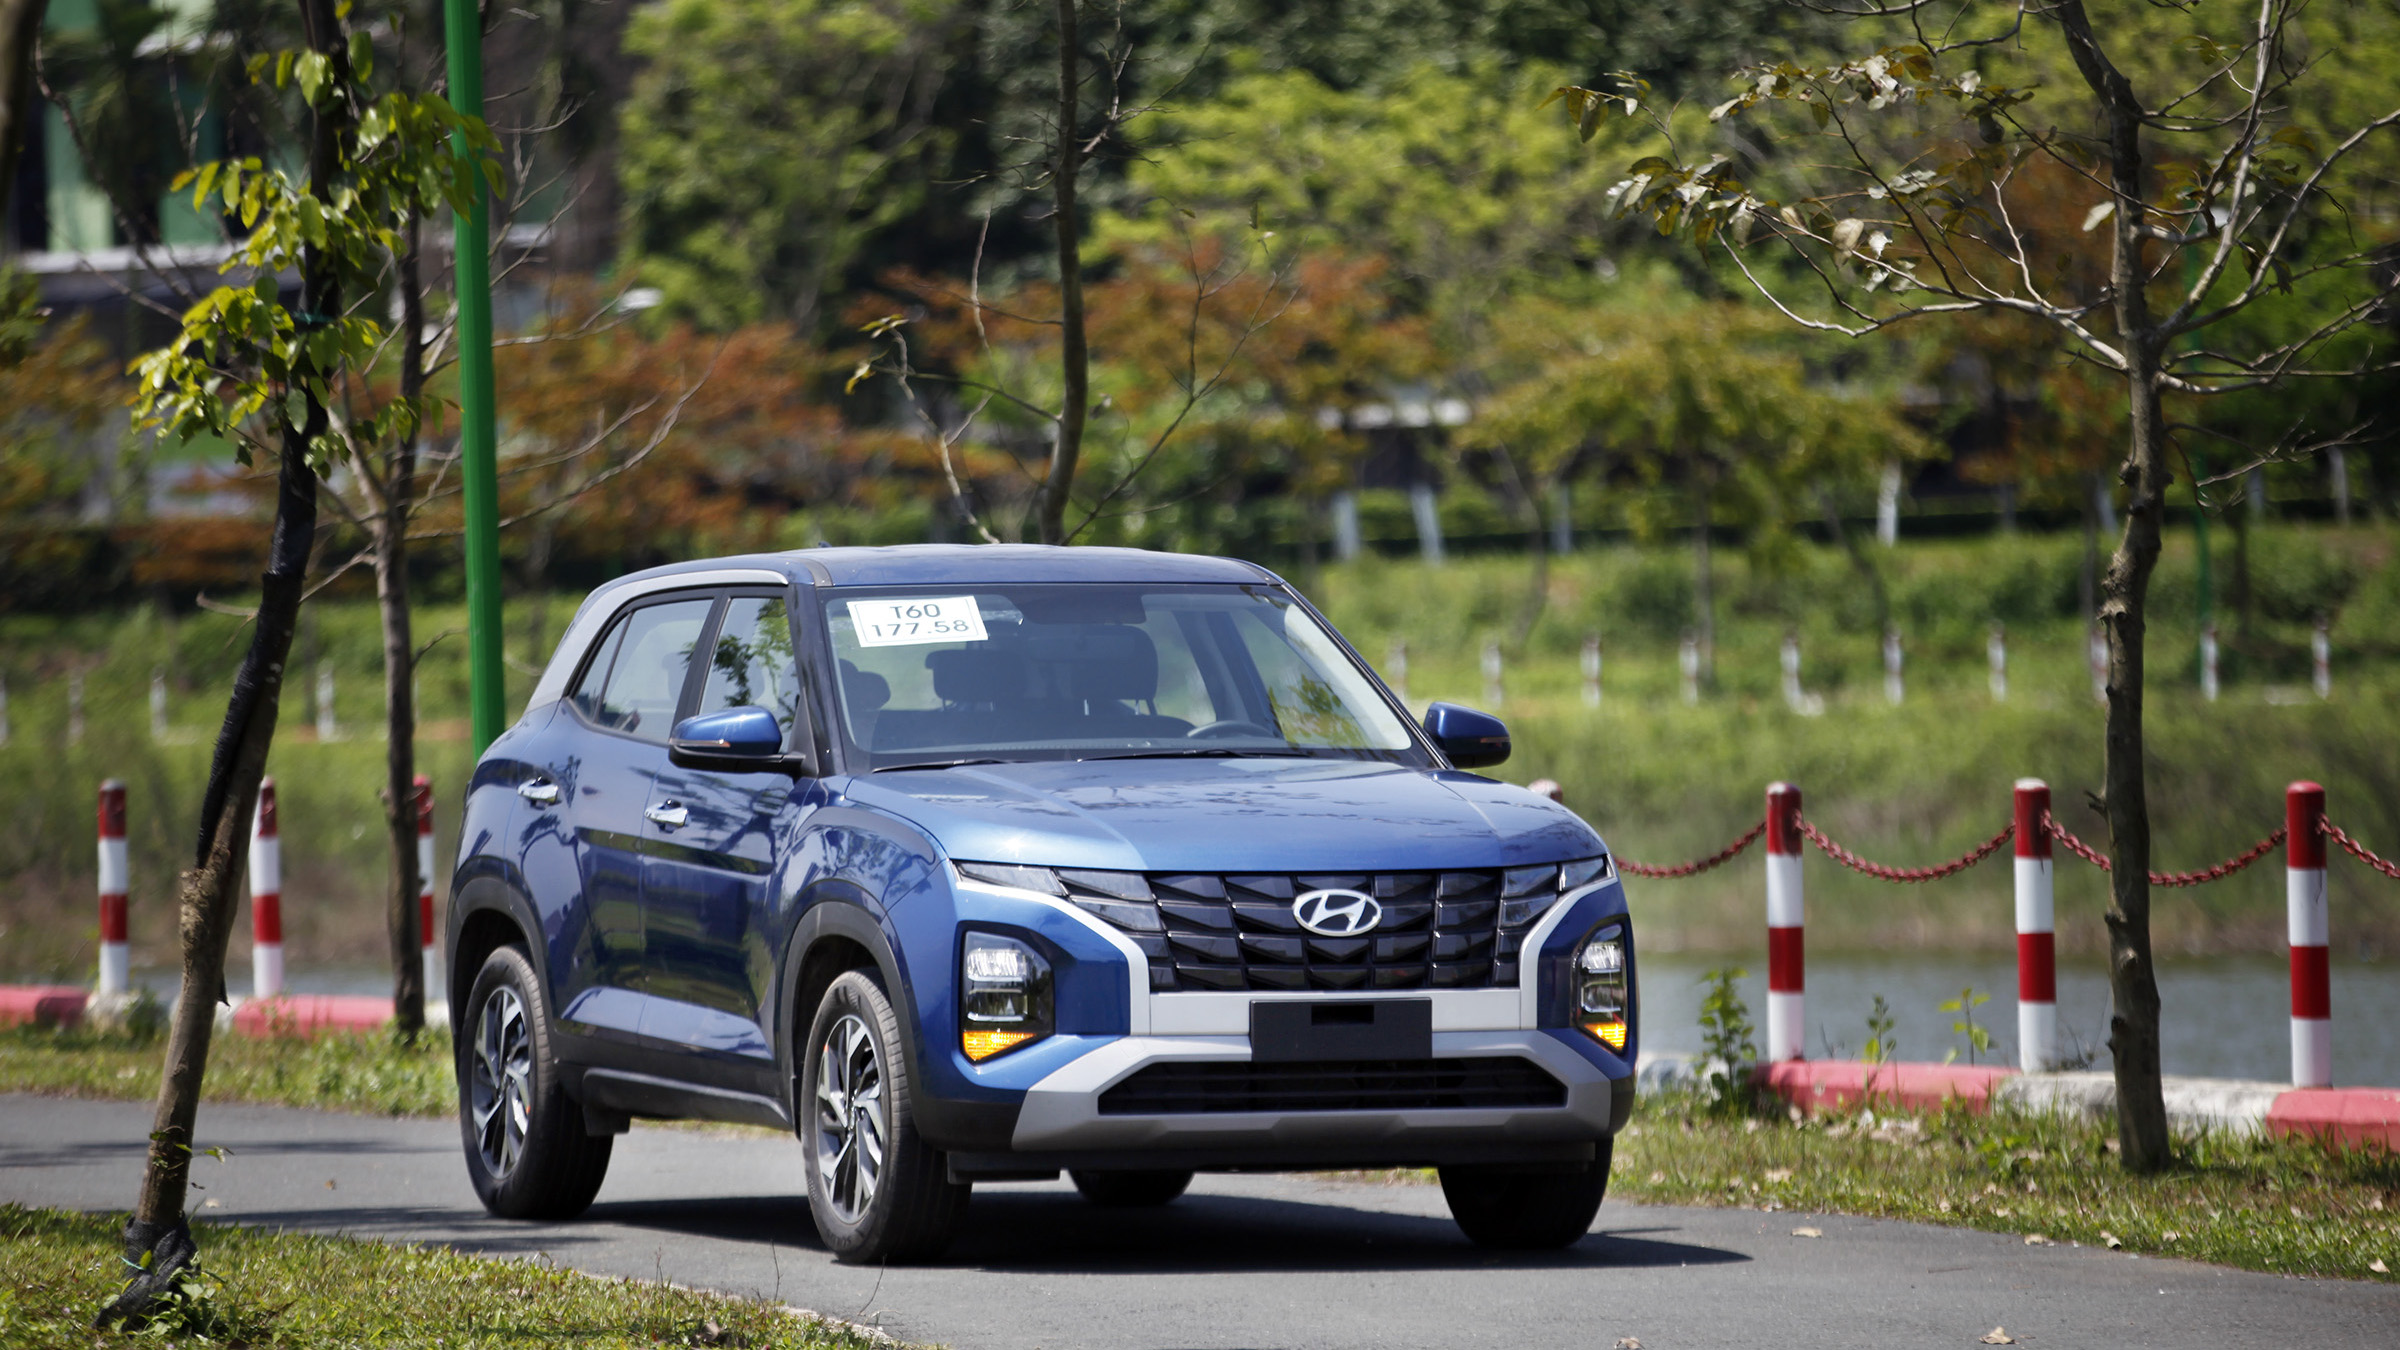 Bảng giá xe Hyundai tháng 8: Hyundai Creta giảm giá 20 triệu đồng - Báo  điện tử VnMedia - Tin nóng Việt Nam và thế giới